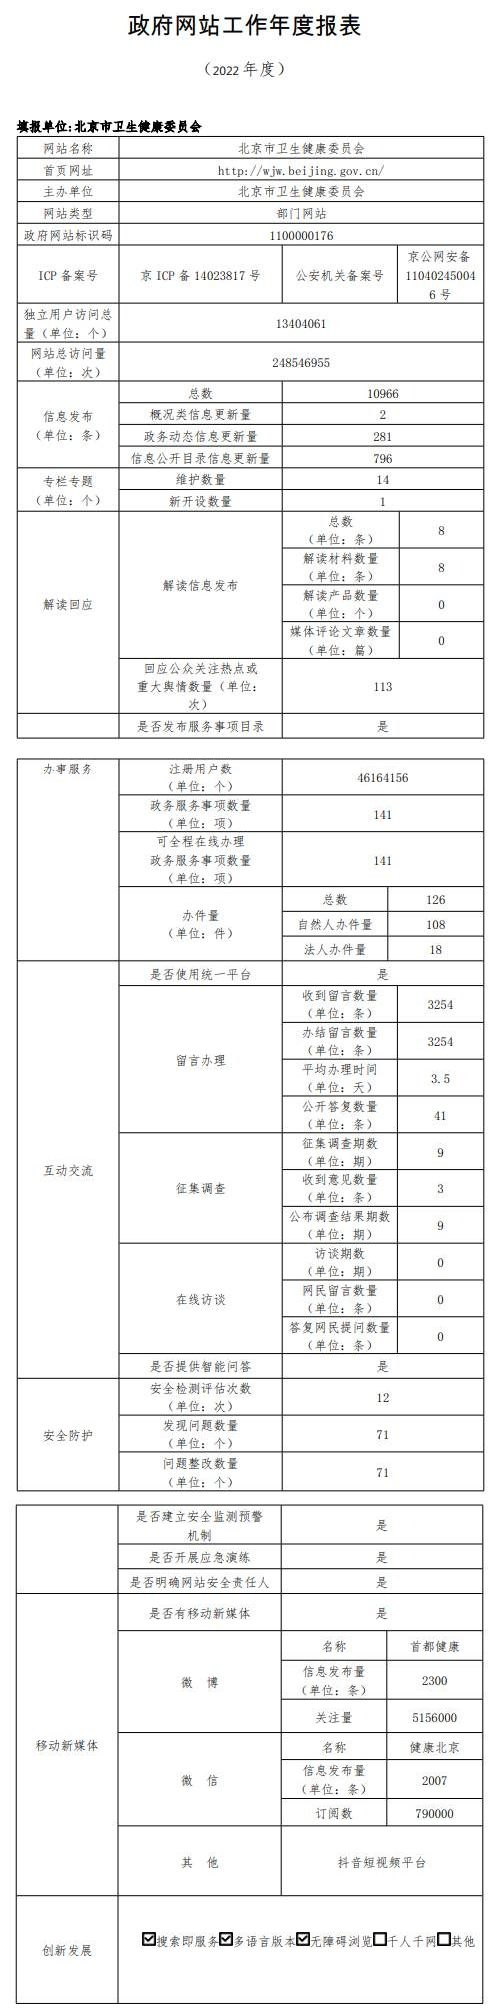 北京市衛生健康委員會2022年政府網站年度工作報表